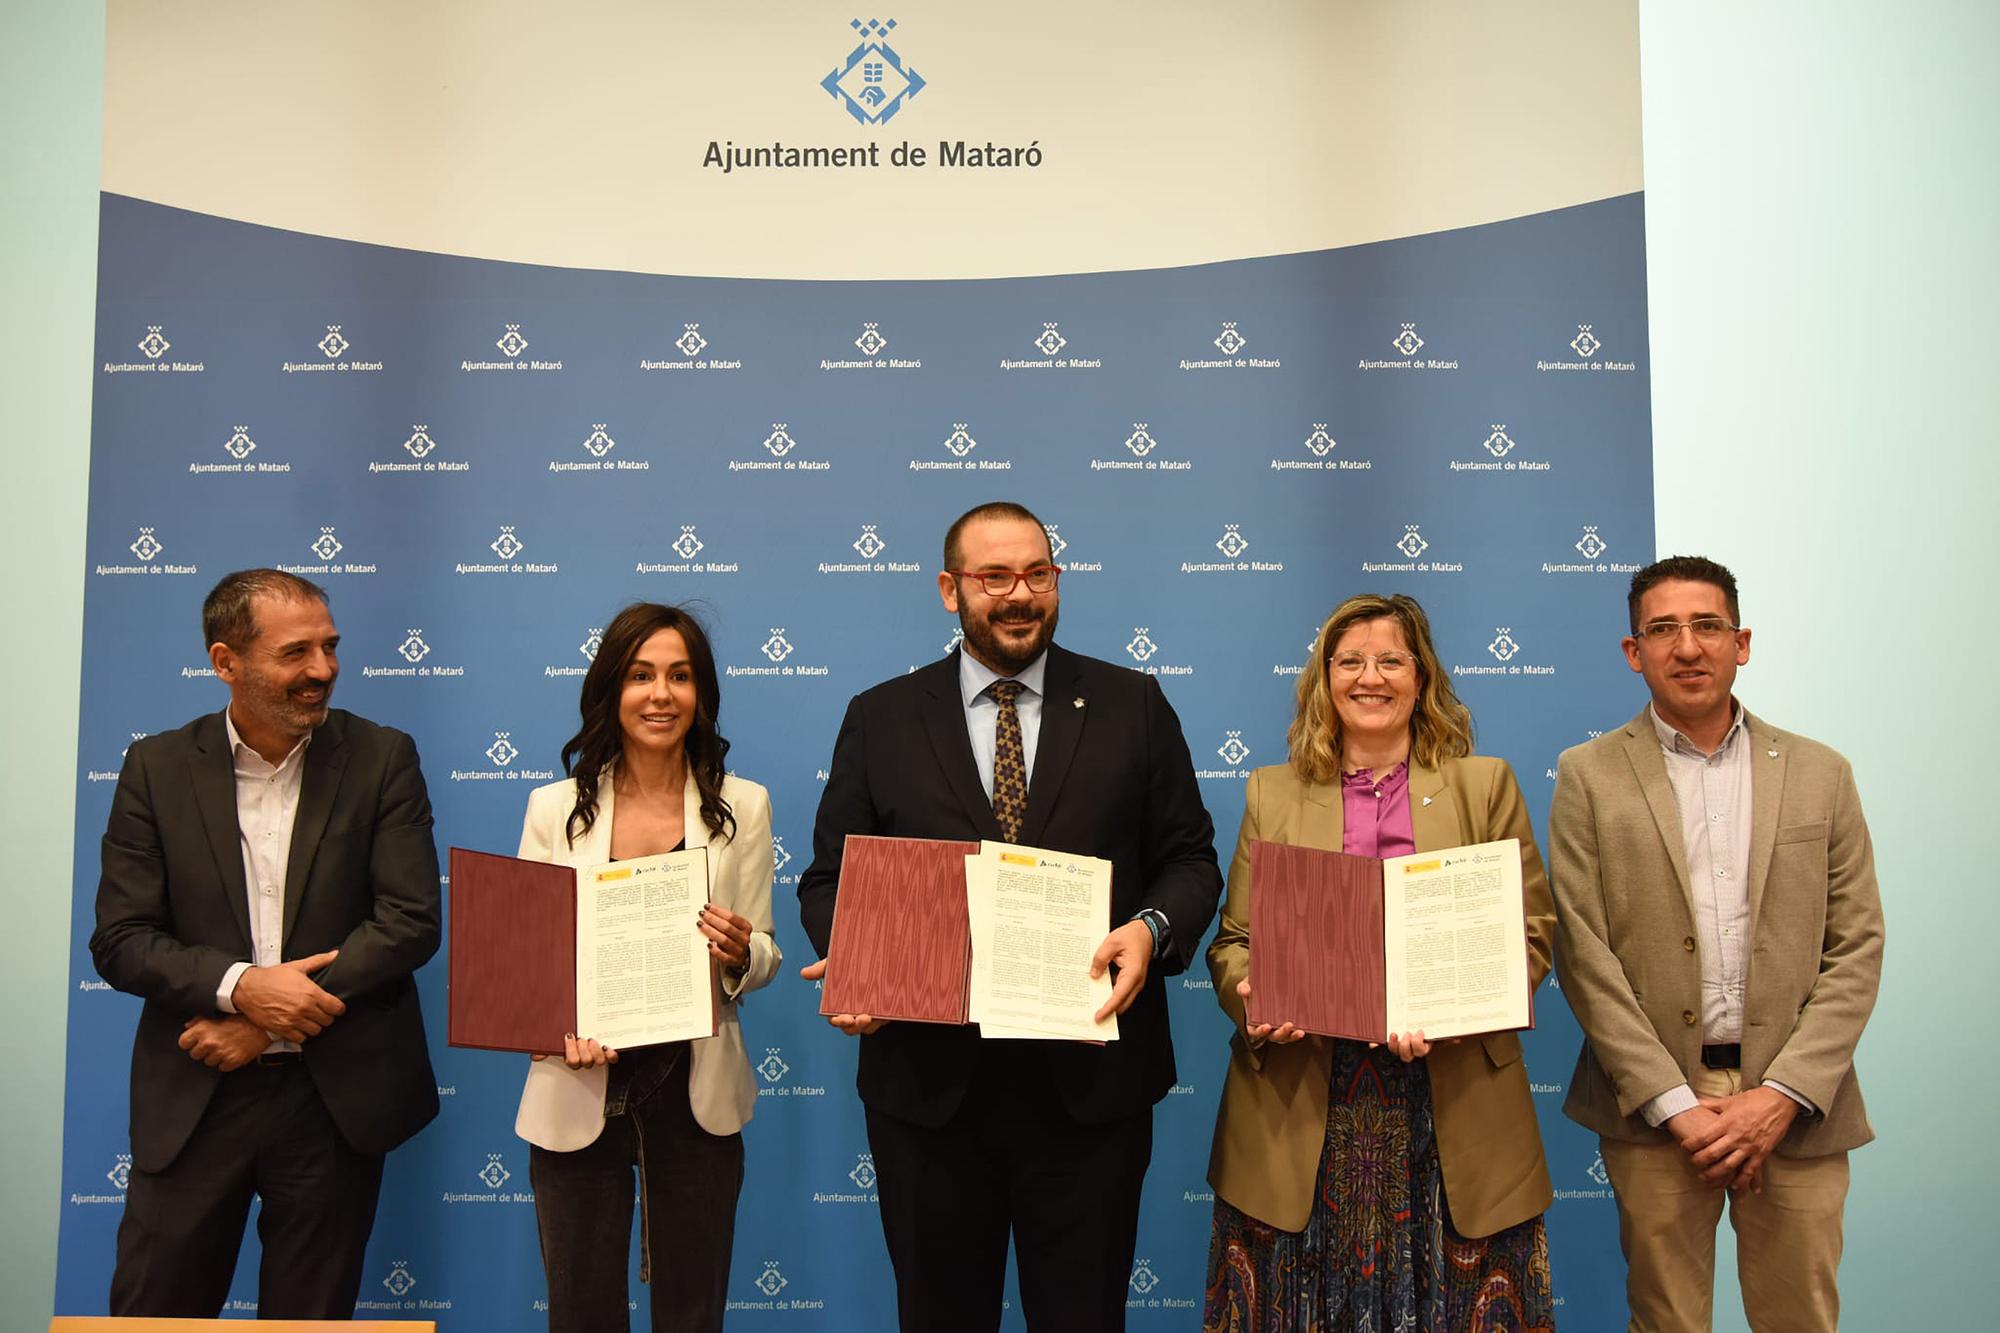 Isabel Pardo de Vera, David Bote y María Luisa Domínguez posando con el protocolo recién firmado